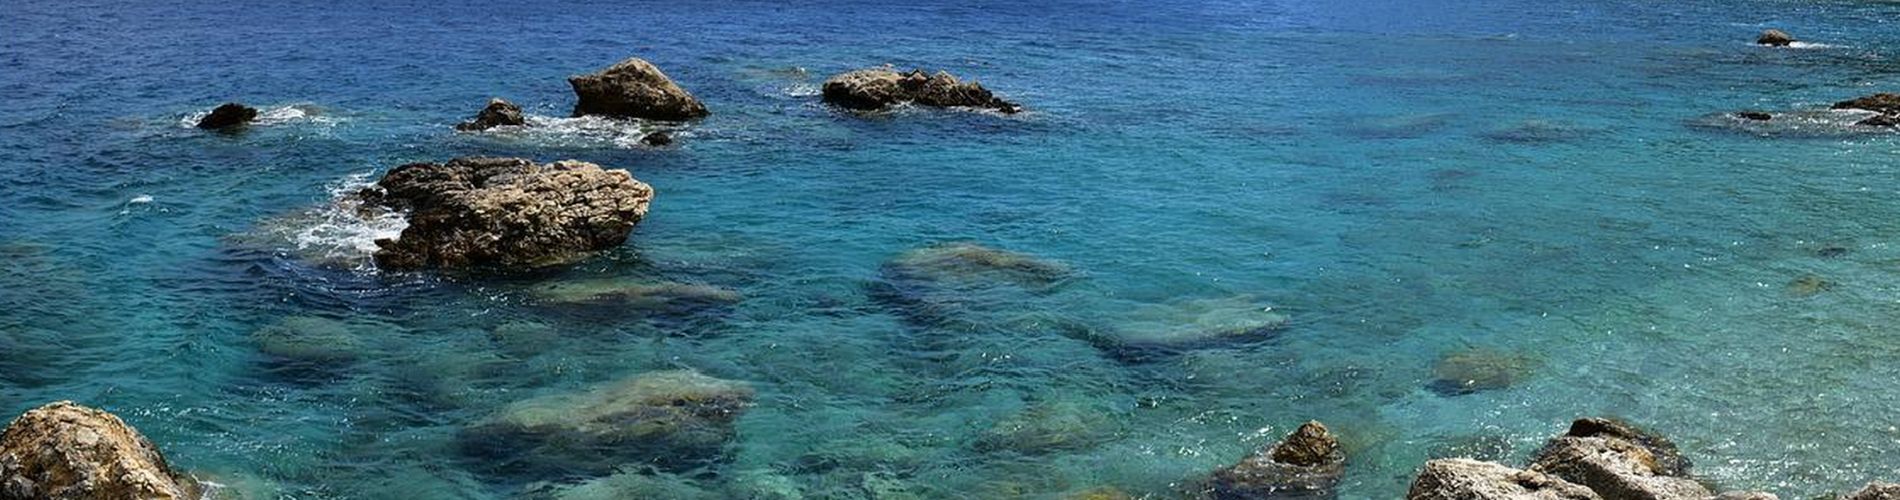 Karpathos - Islandhopping Dodekanesos